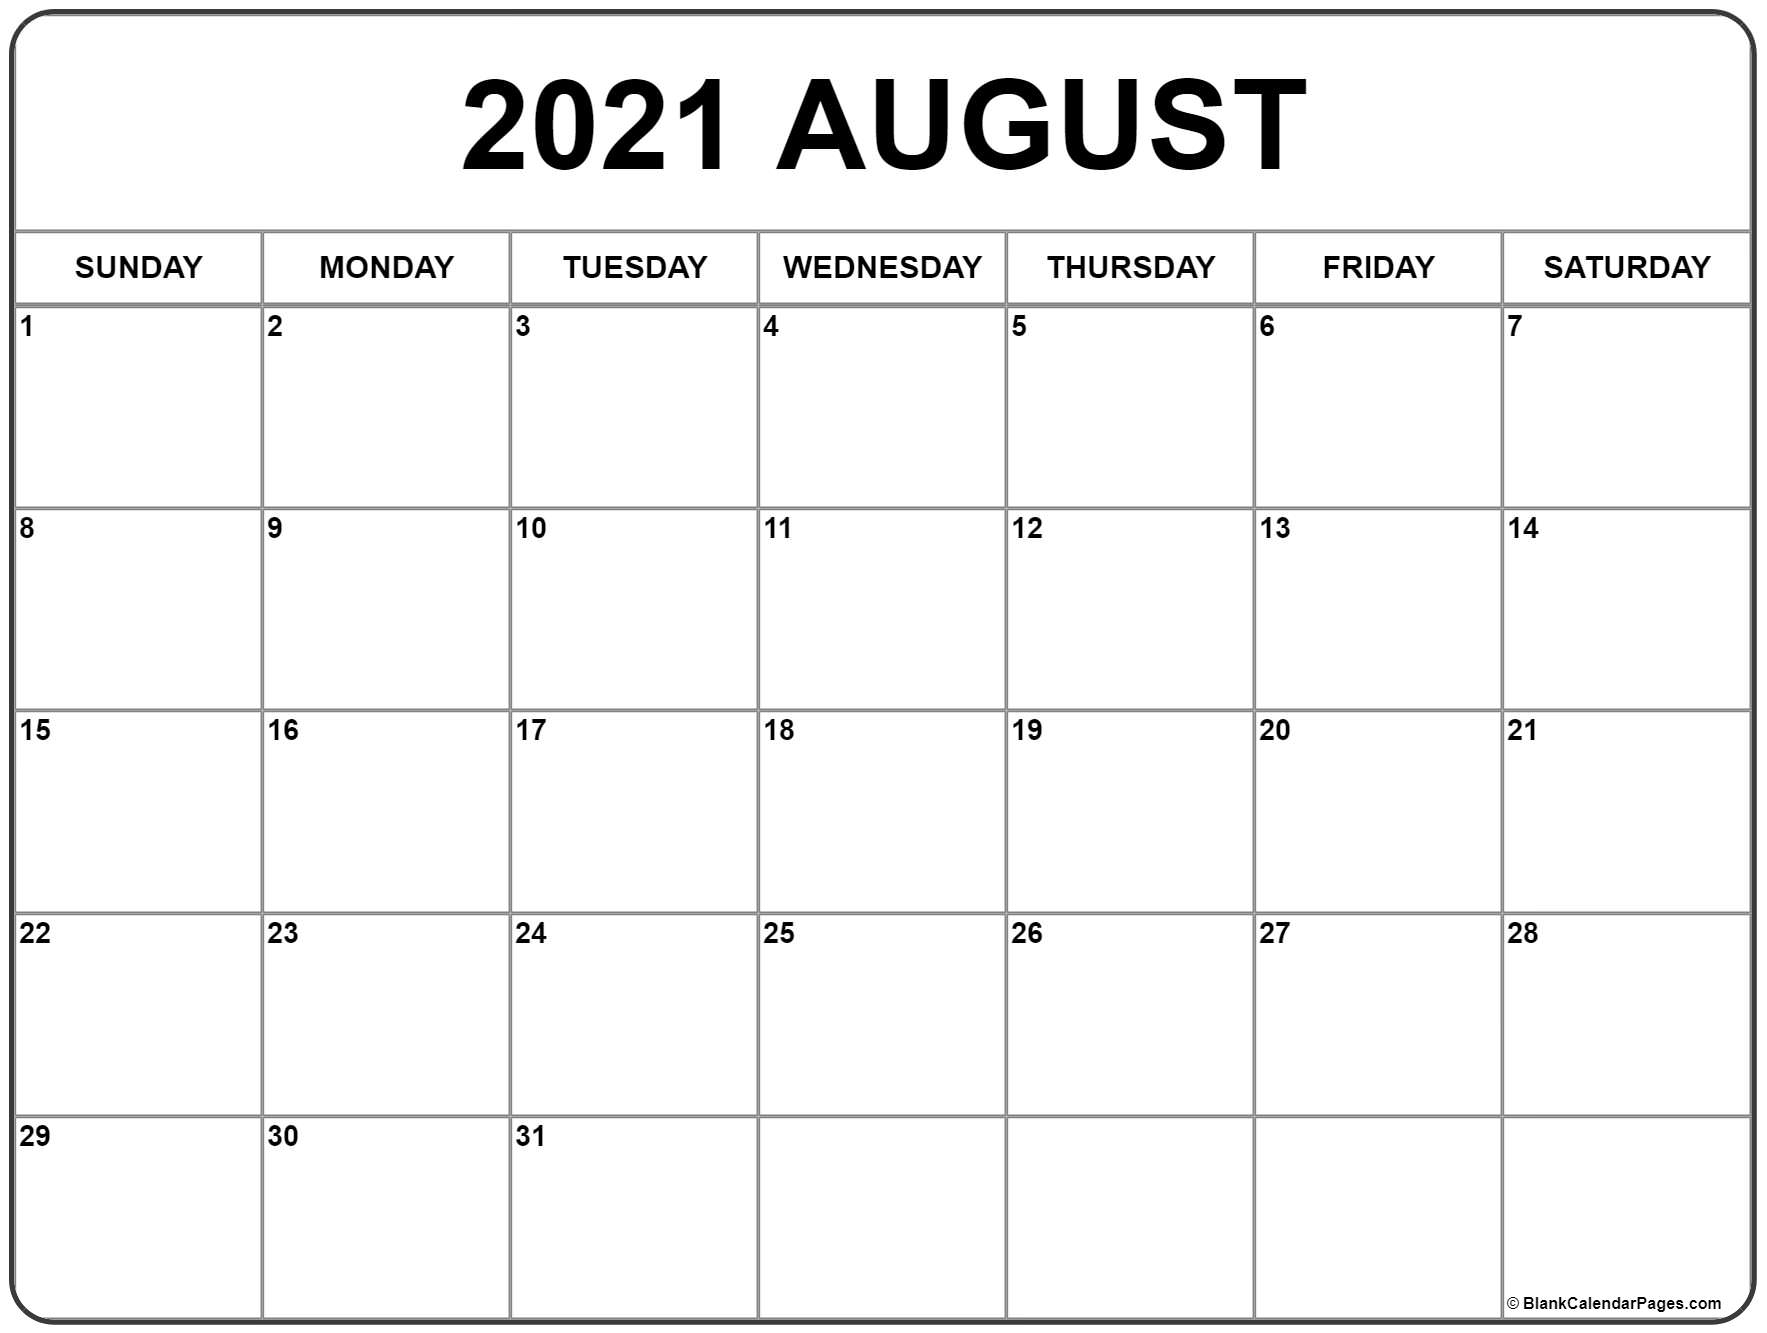 Get 2021 Calendar Of August Through December